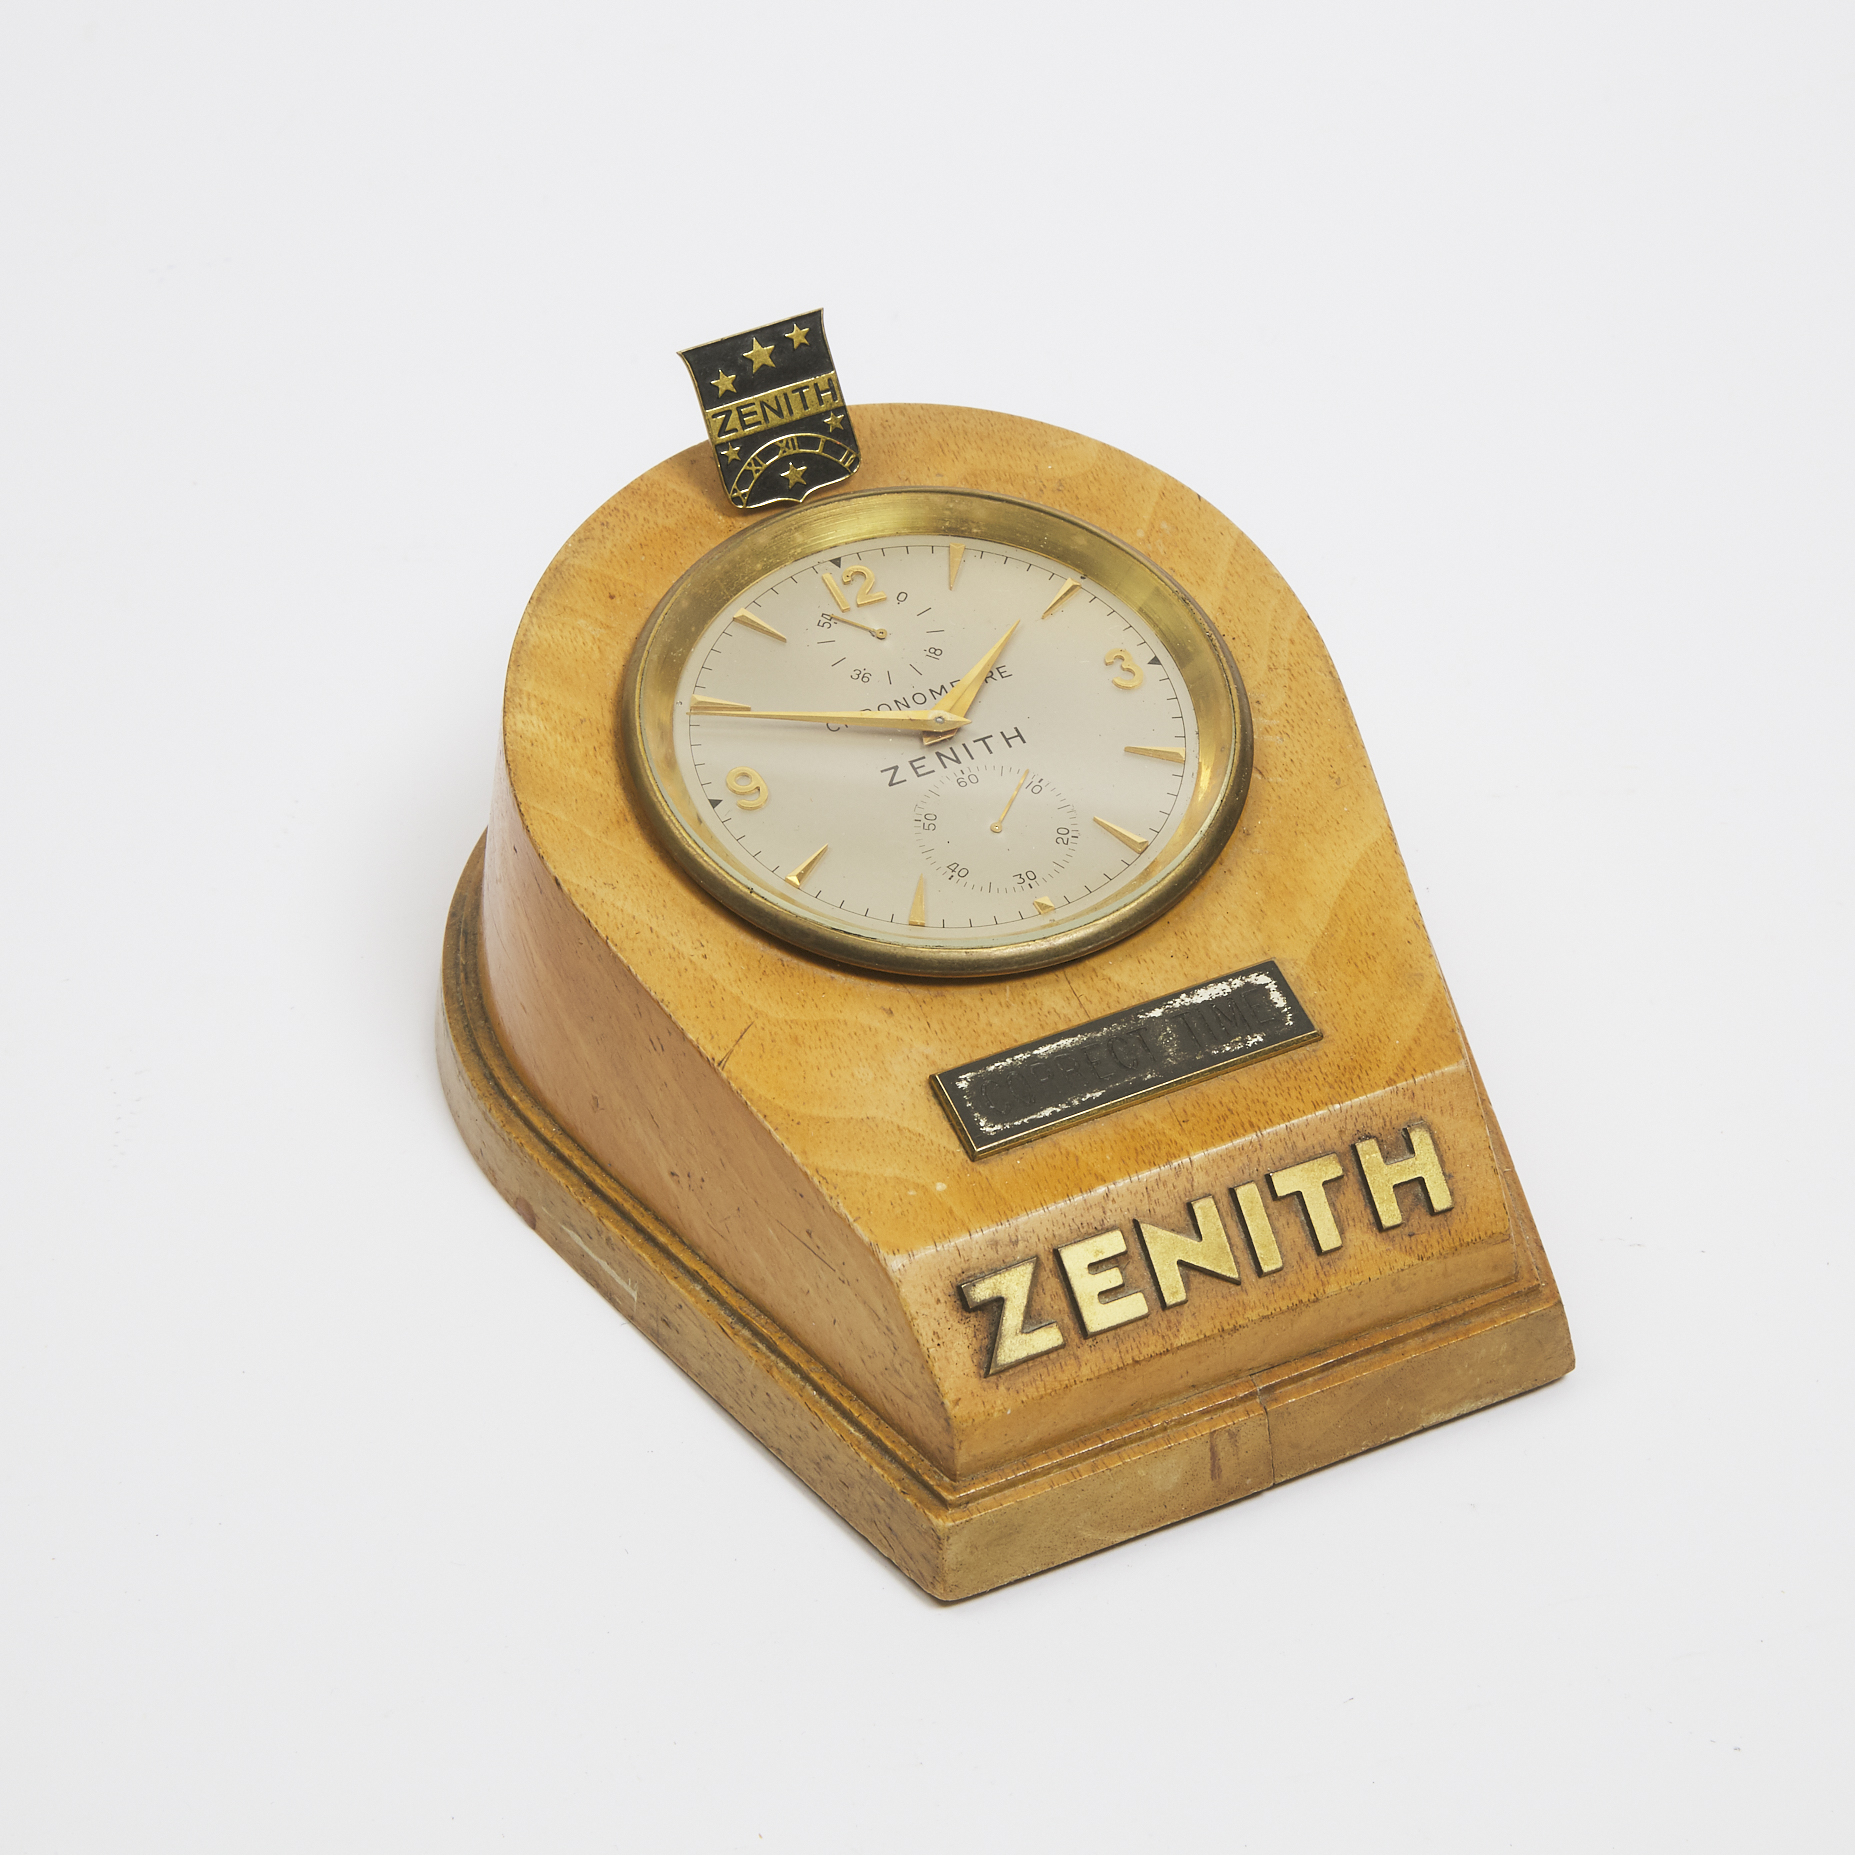 Zenith Correct Time Counter Top Chronometer,